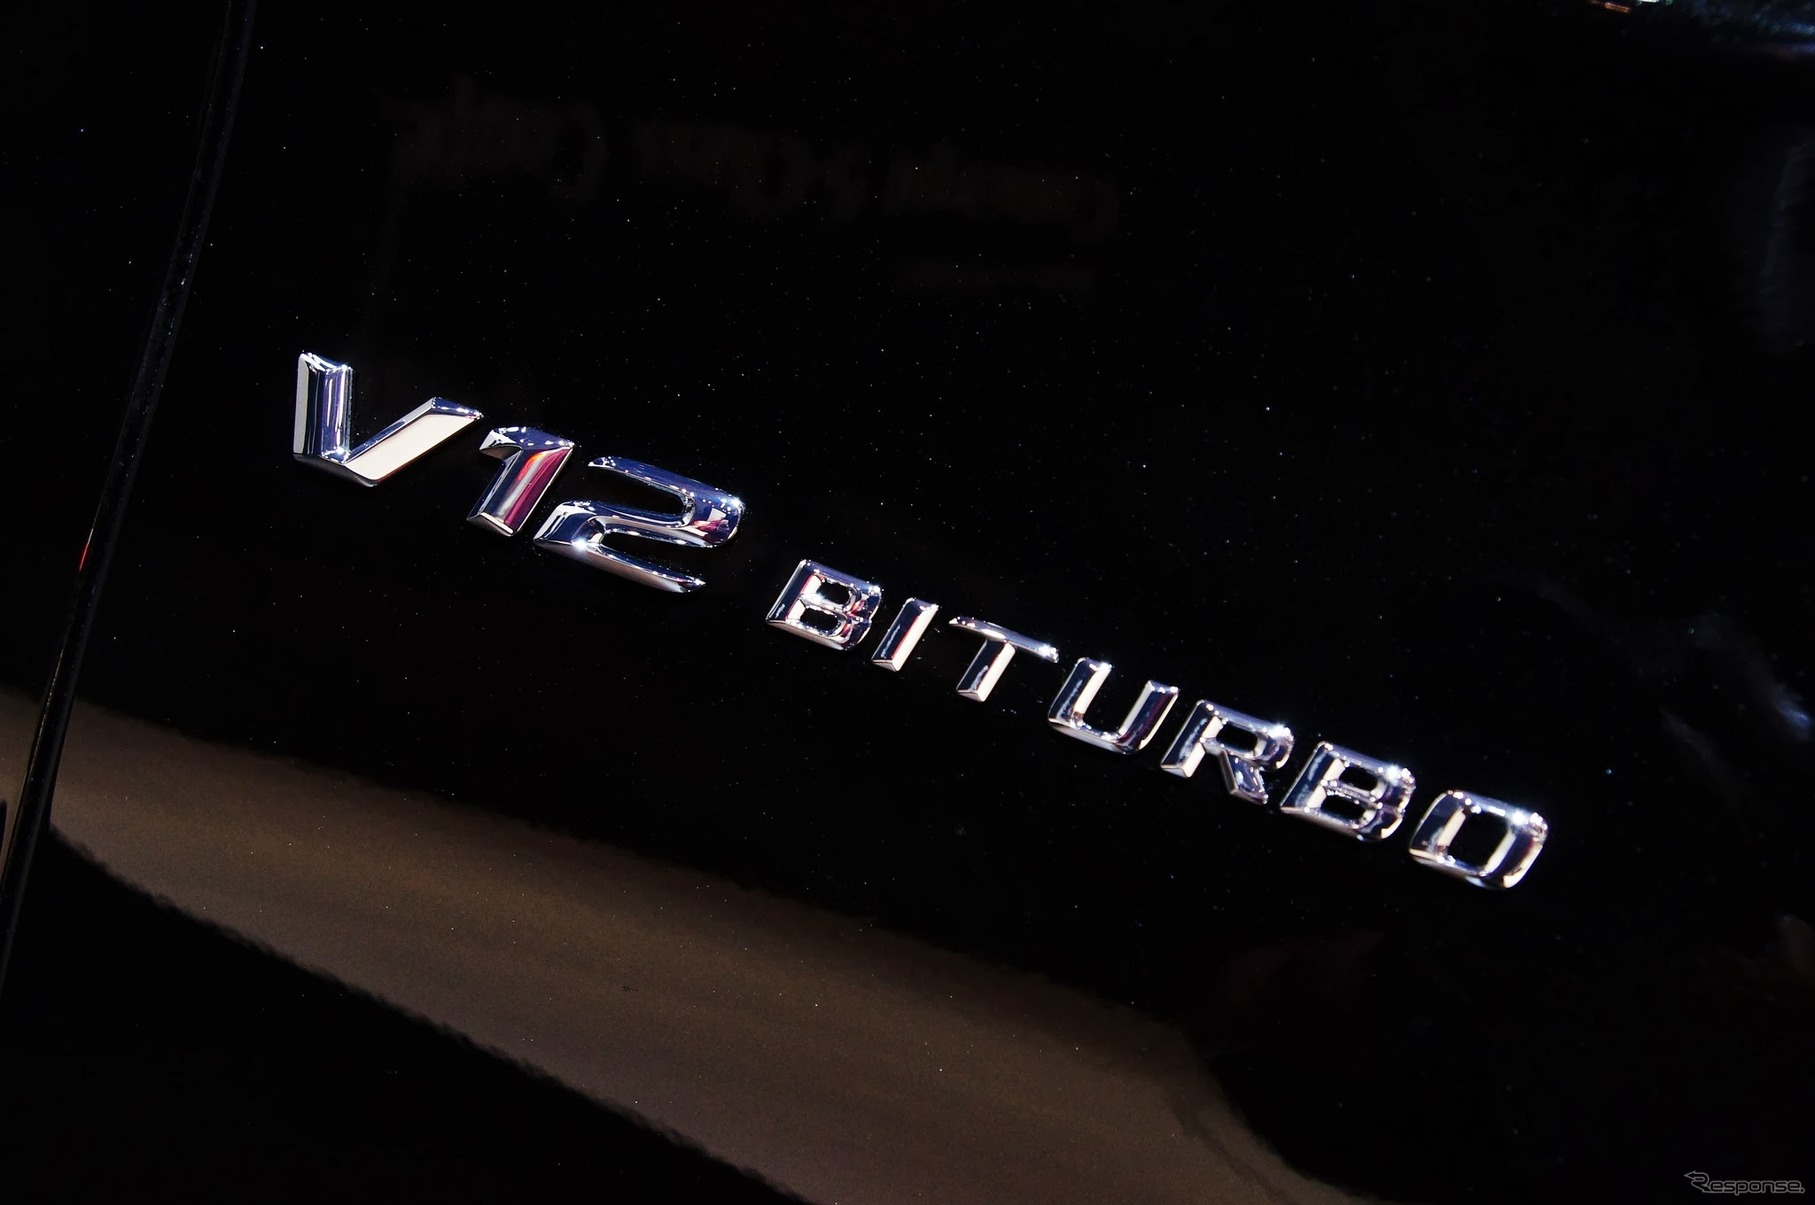 メルセデス・ベンツ S65 AMG ロング